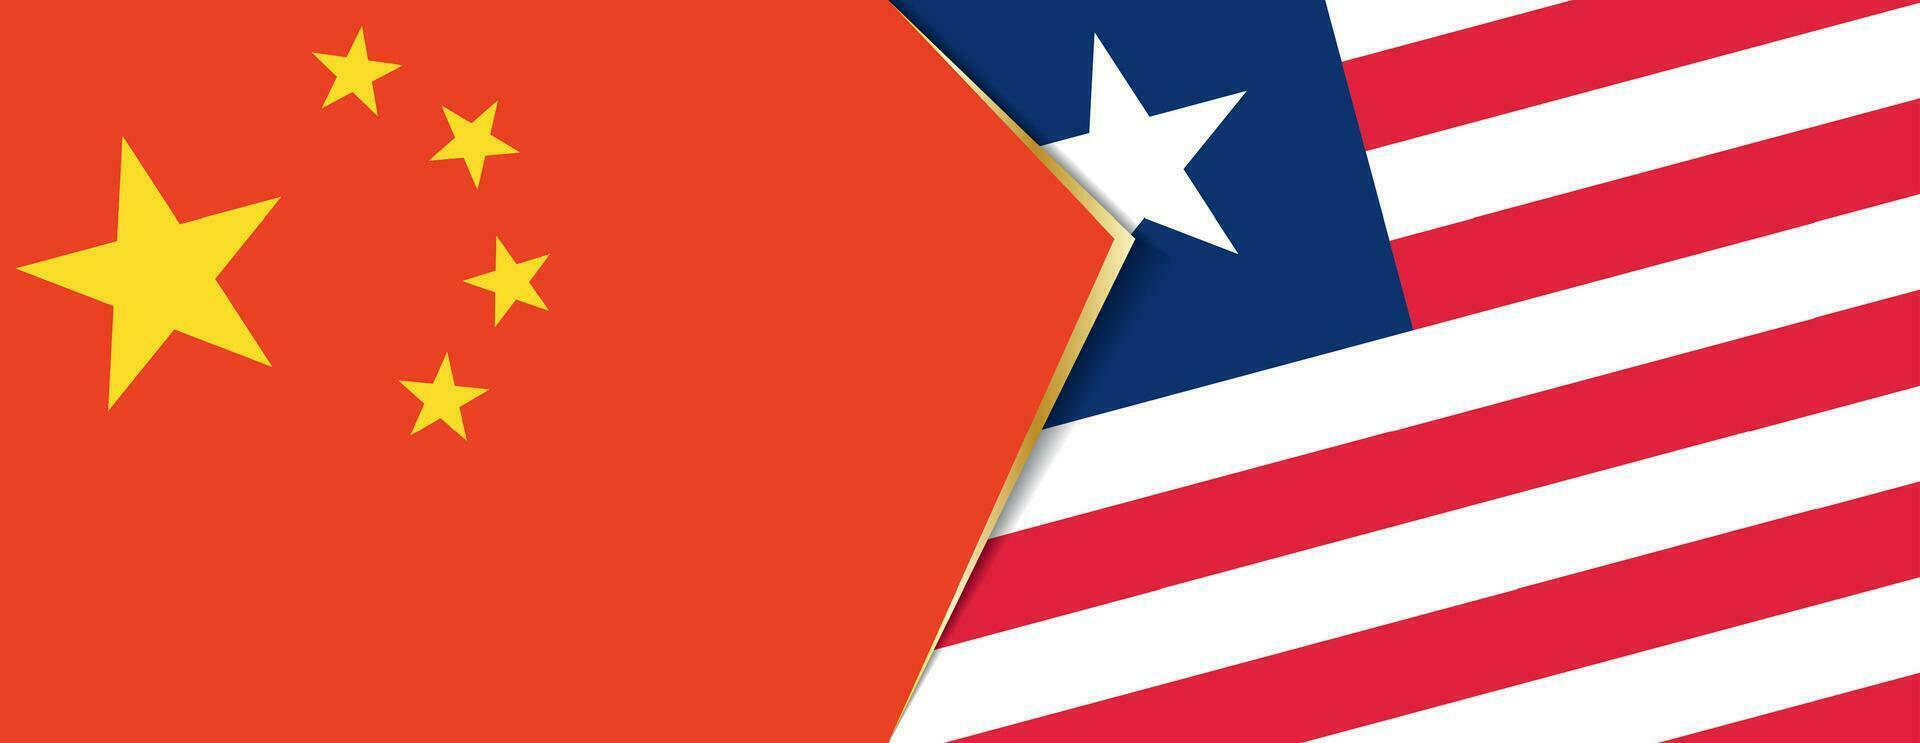 China y Liberia banderas, dos vector banderas